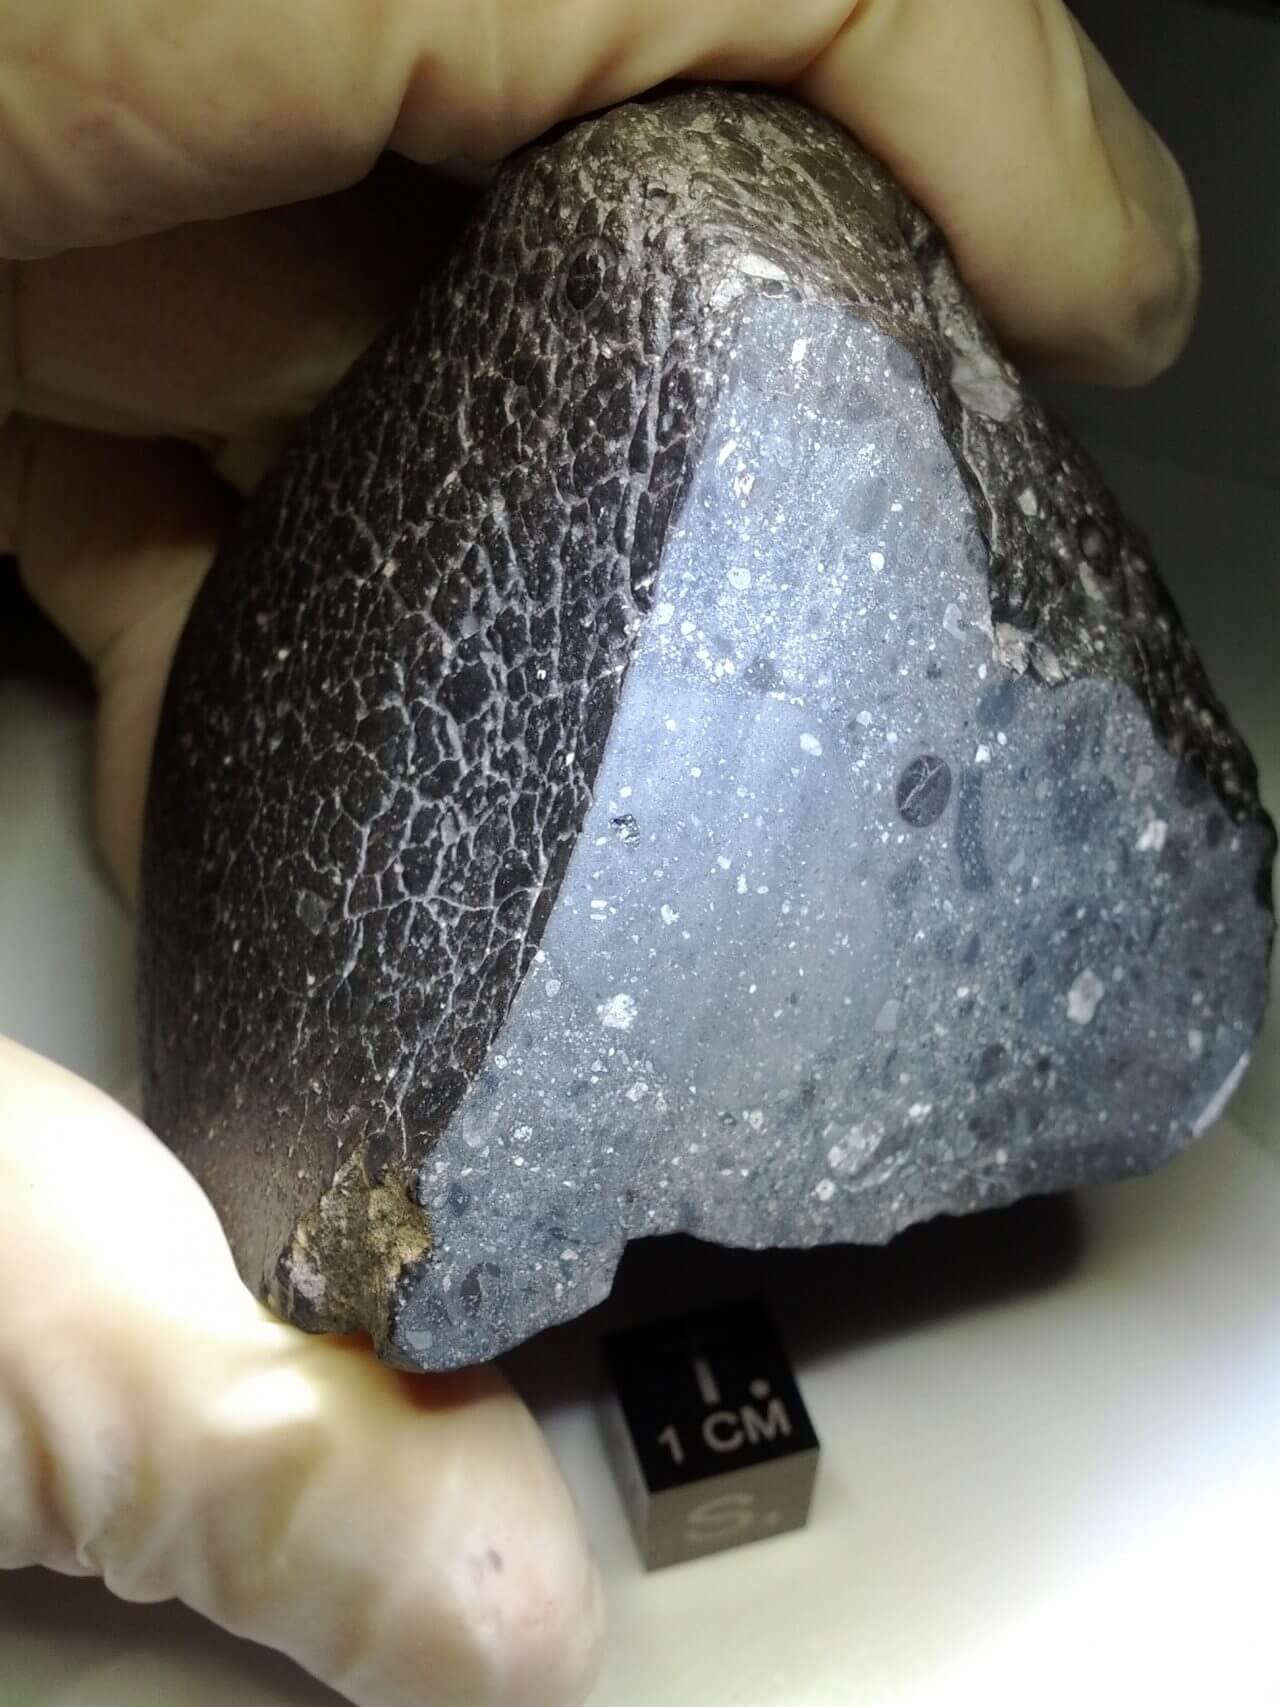 【▲ 図1: 火星隕石のNWA 7034は、その黒っぽい見た目から “ブラック・ビューティー” とも呼ばれています（Credit: NASA）】